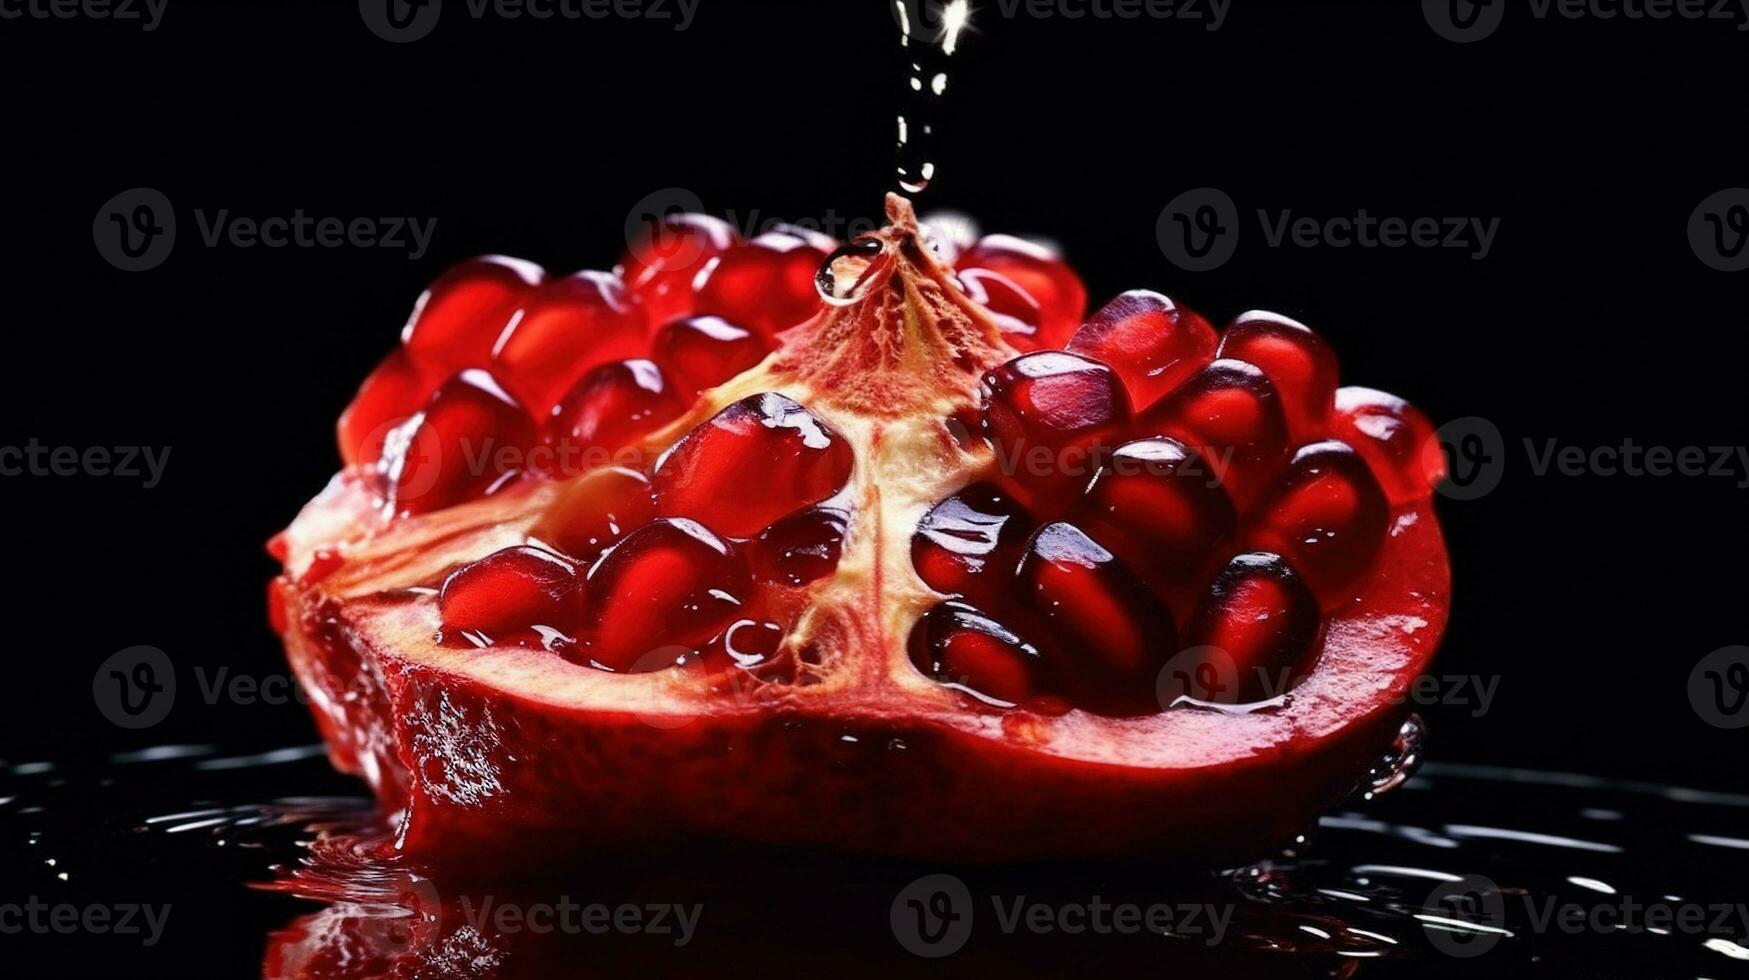 generatief ai, macro vers sappig voor de helft van granaatappel fruit met druppels van water achtergrond. detailopname foto